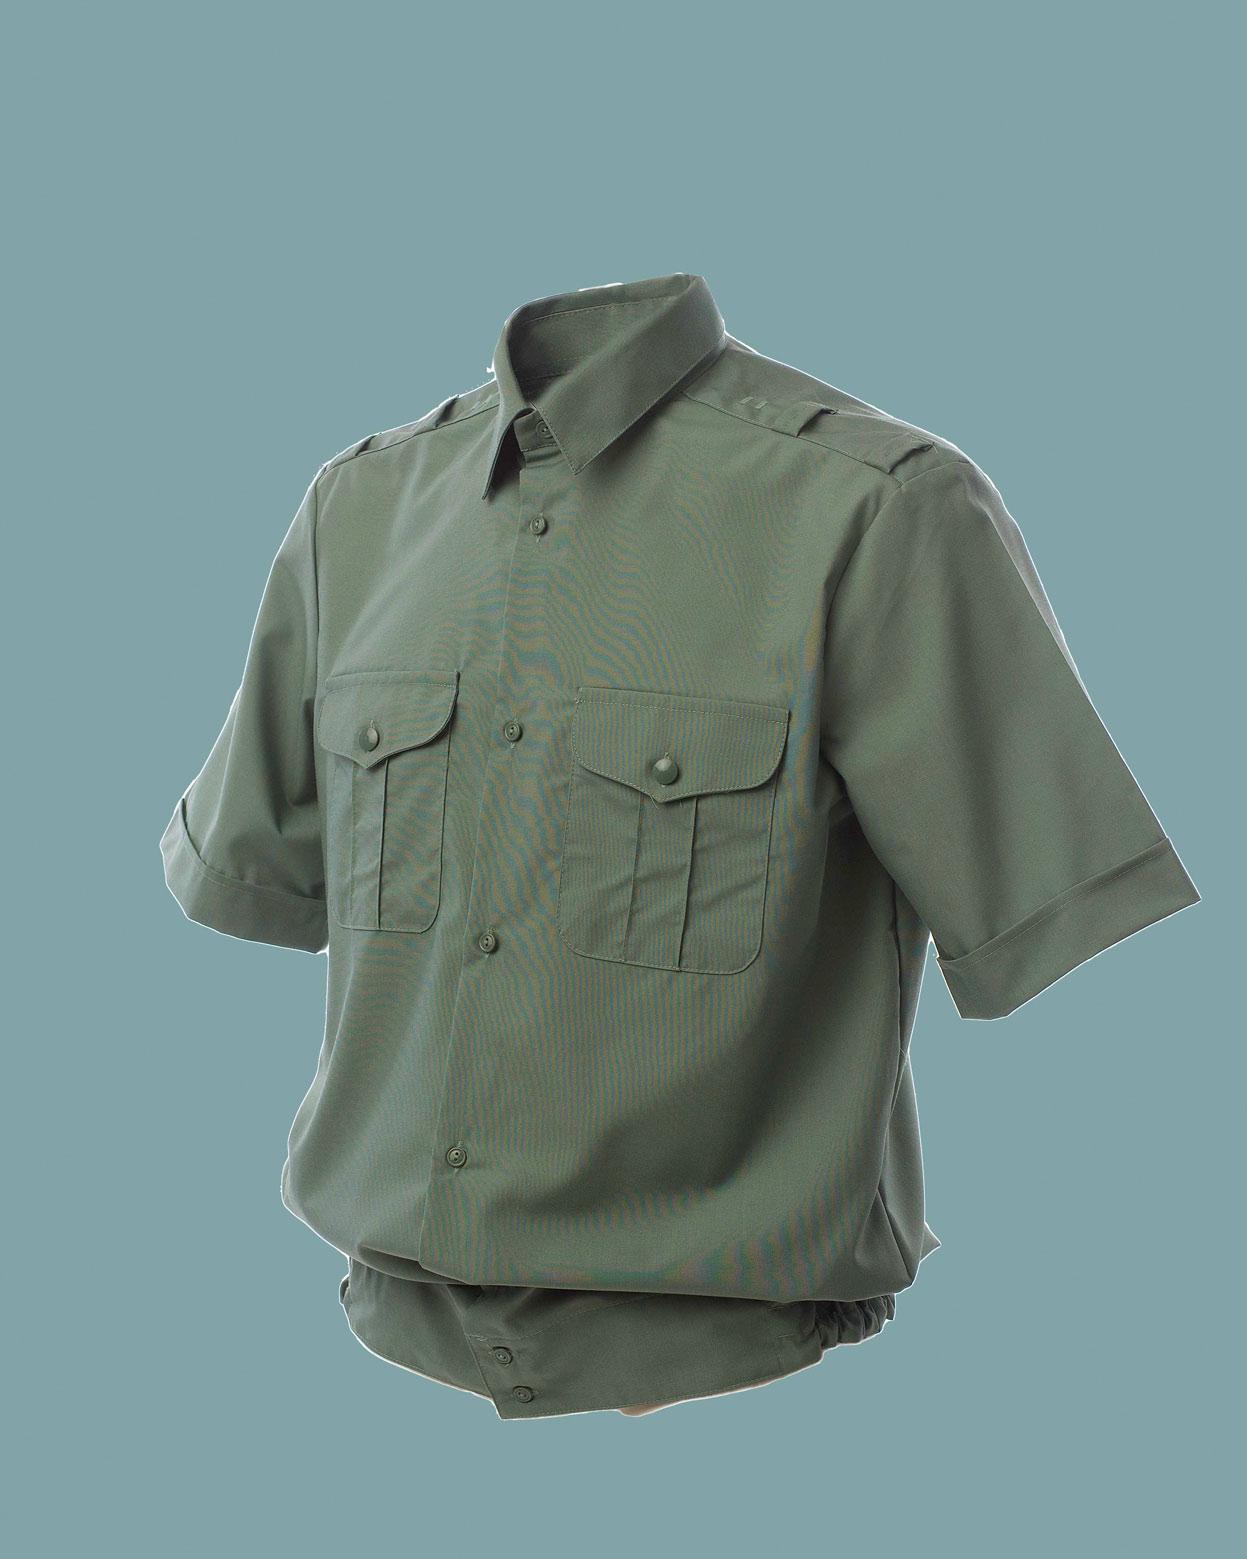 Военная рубашка для девочки